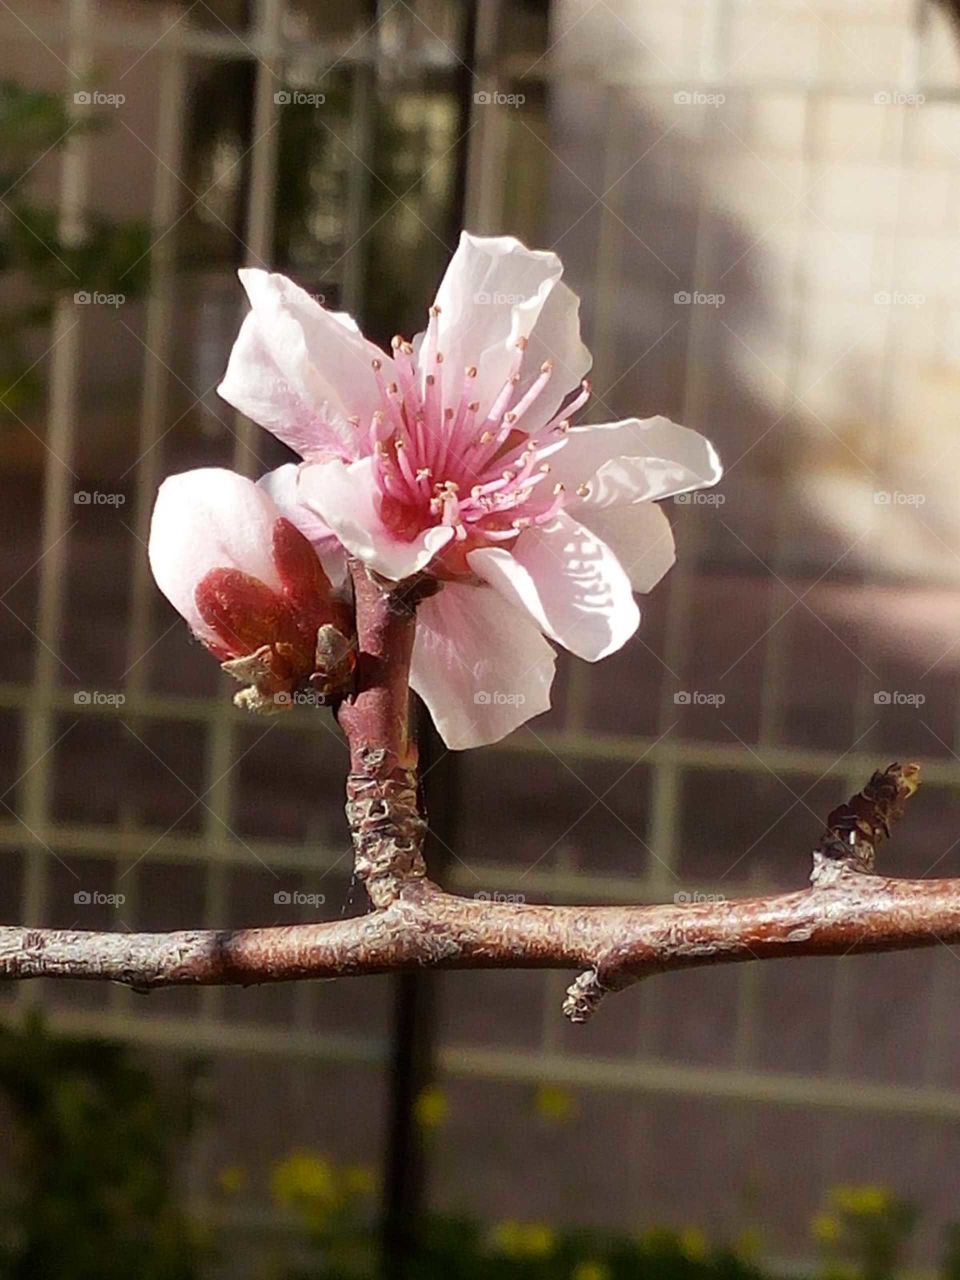 Peach flower